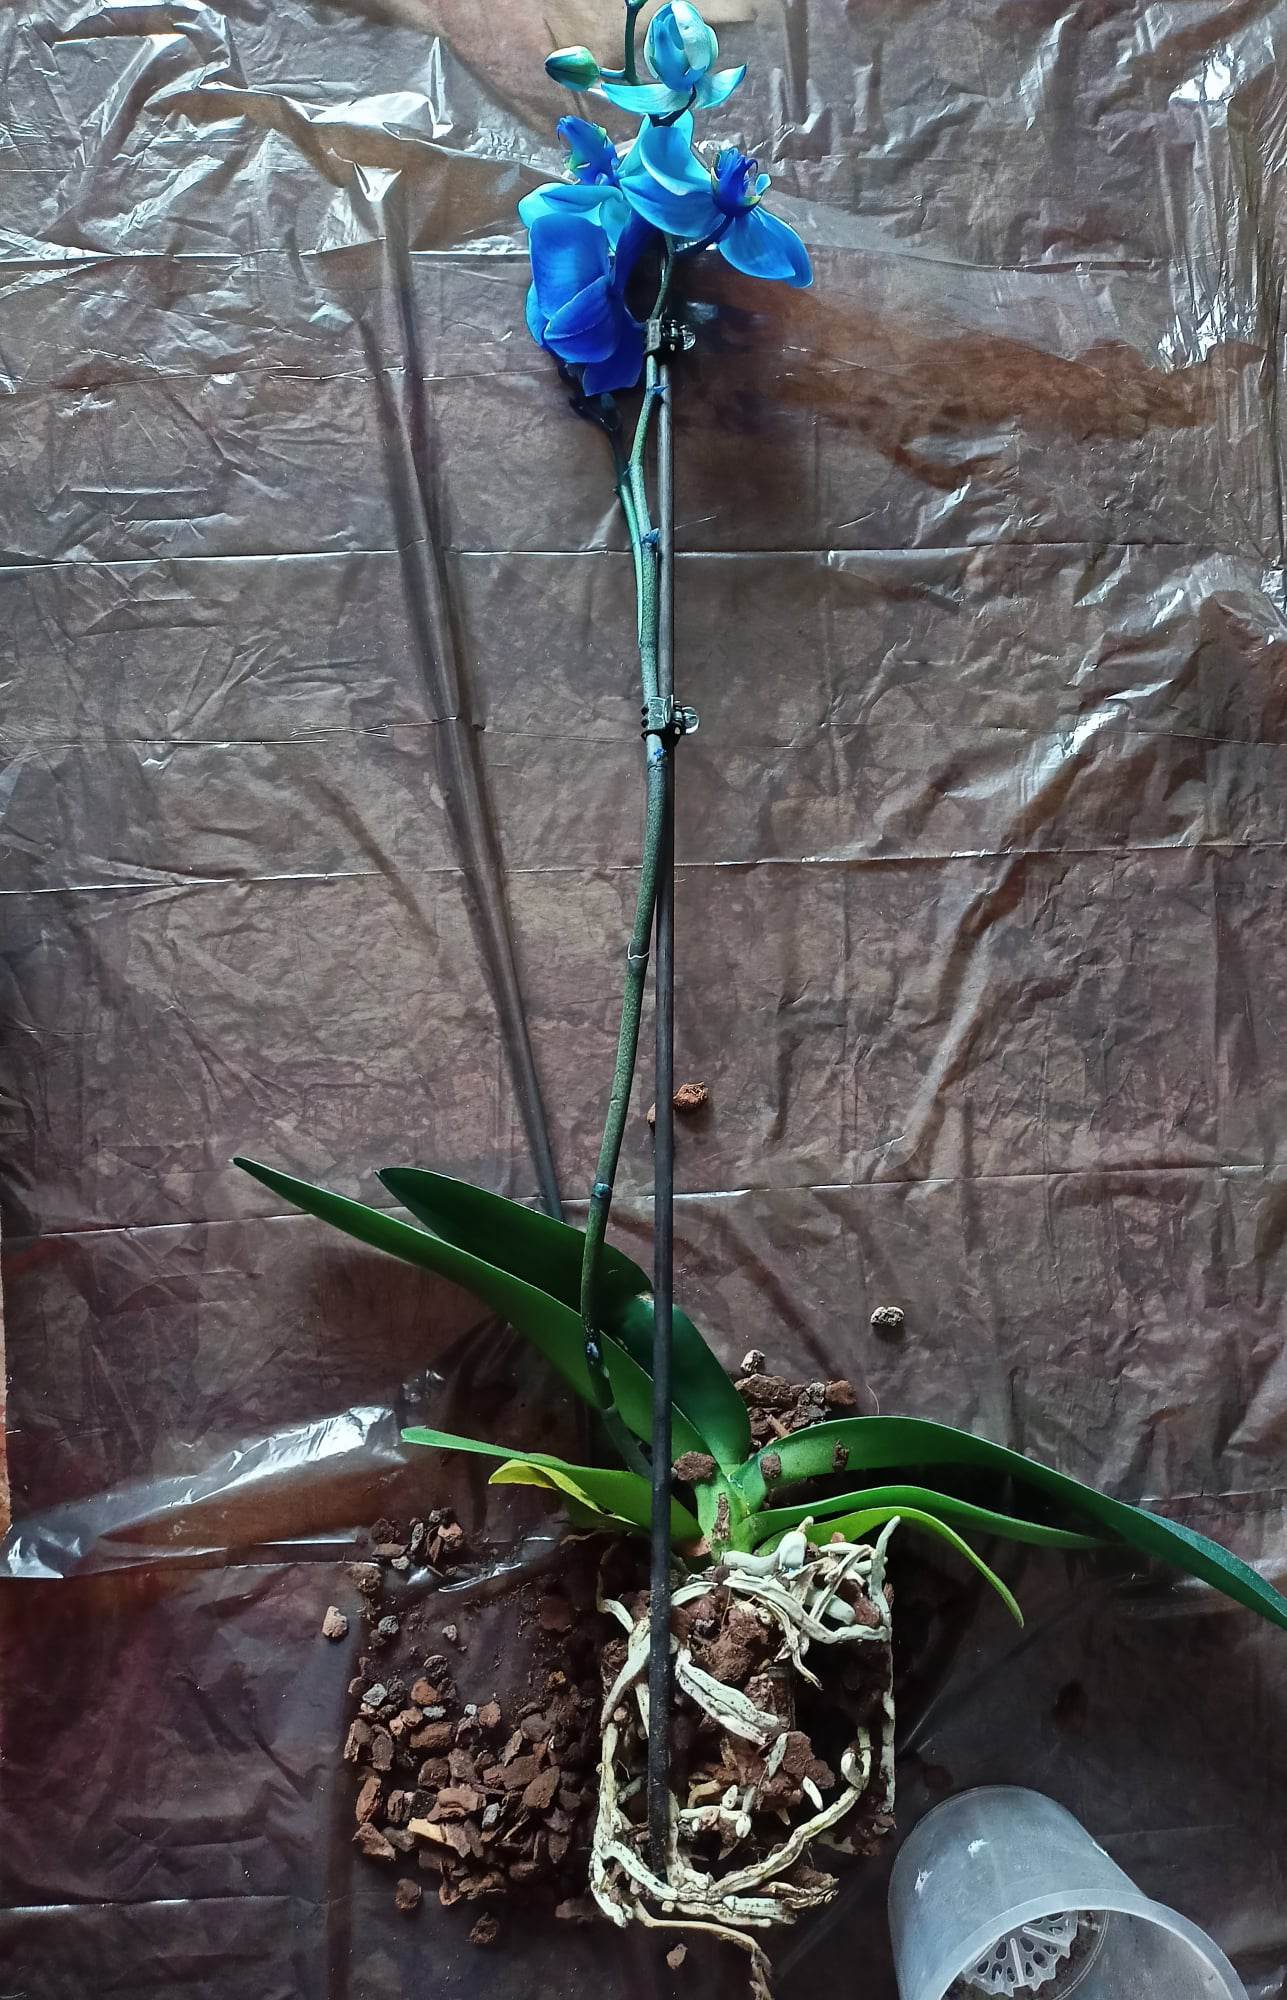 Come rinvasare le orchidee